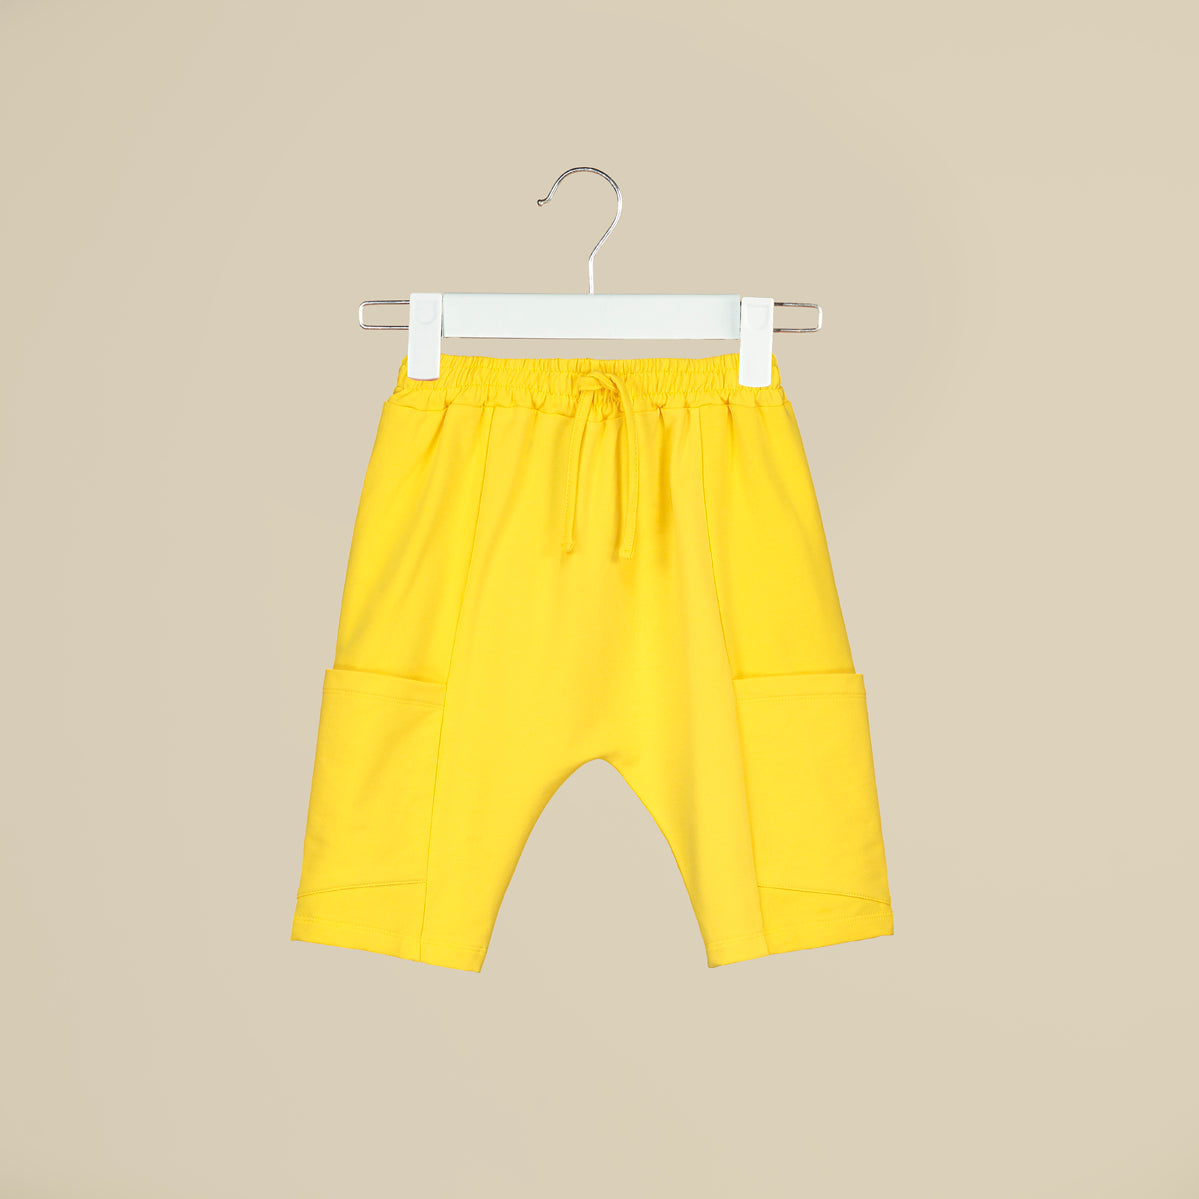 Shorts baggy in tuta gialla con tasconi